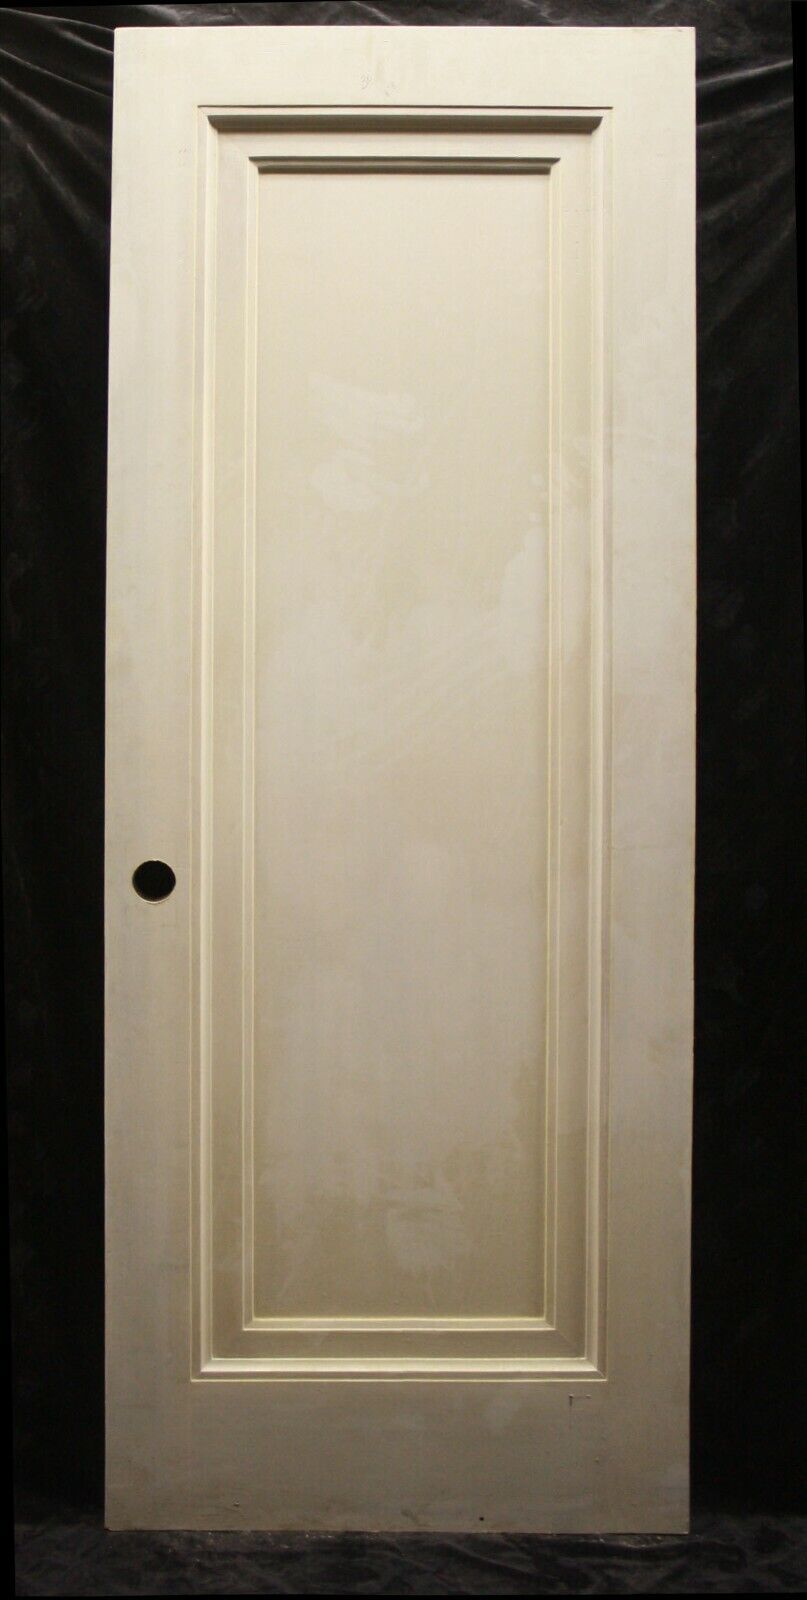 30"x80"x1.75" Antique Vintage Old SOLID Wood Wooden Interior Door Single Panel